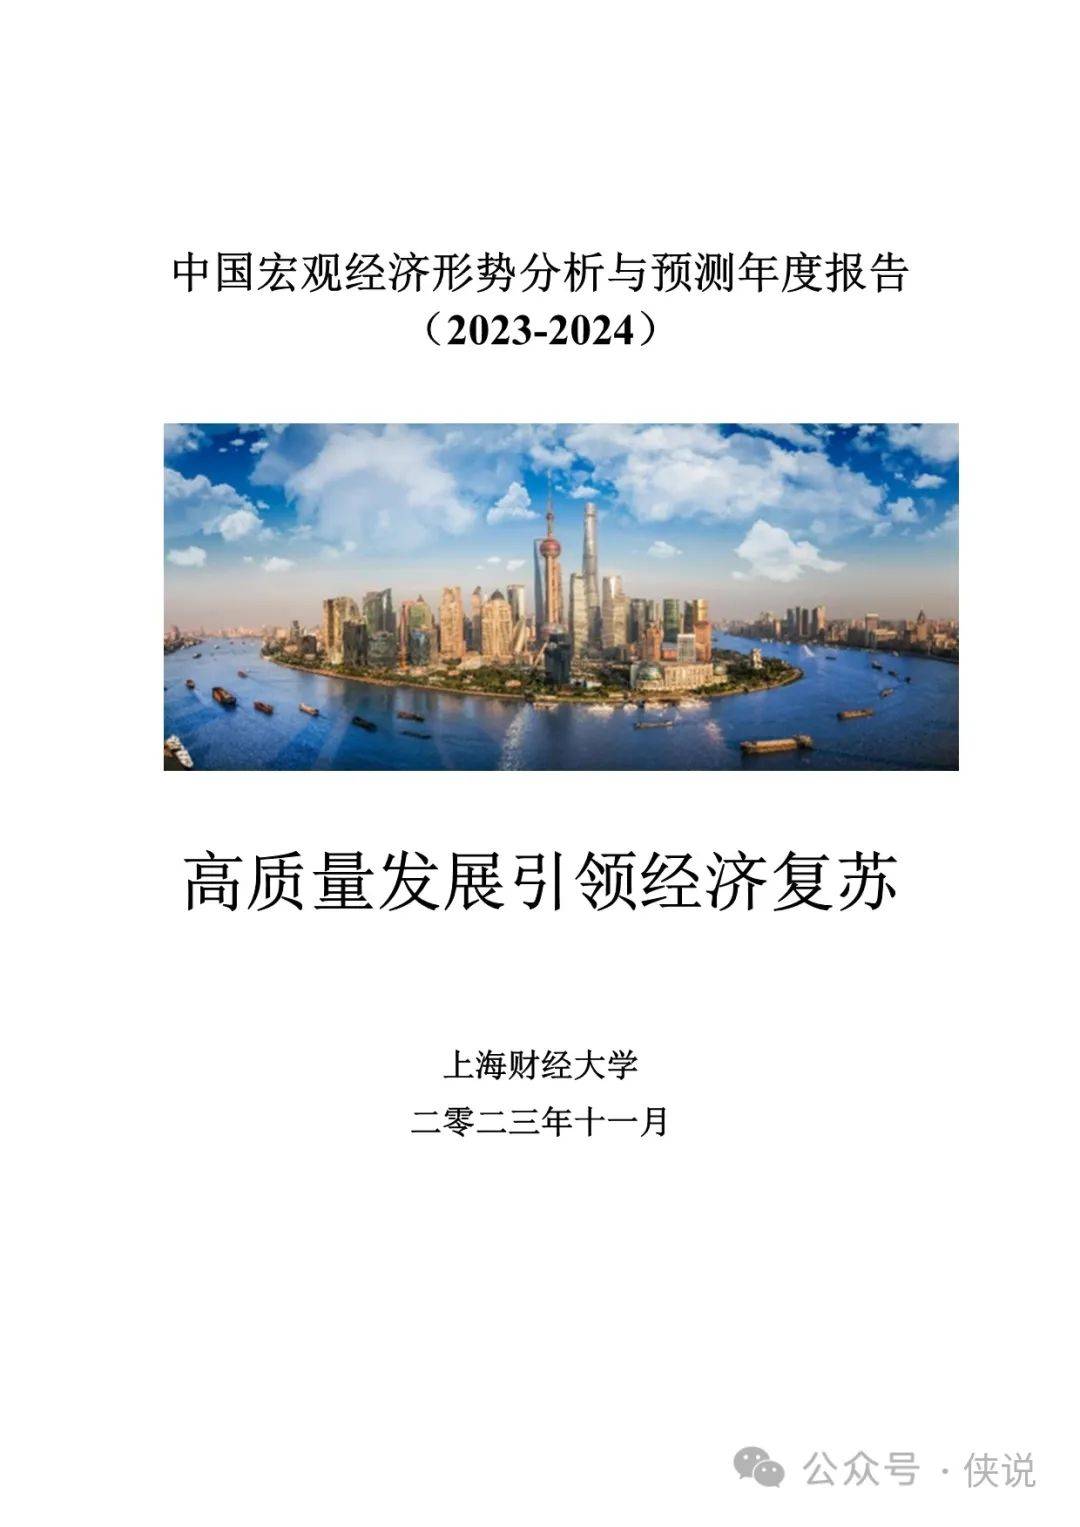 中国宏观经济形势分析与预测年度报告（2023-2024） 